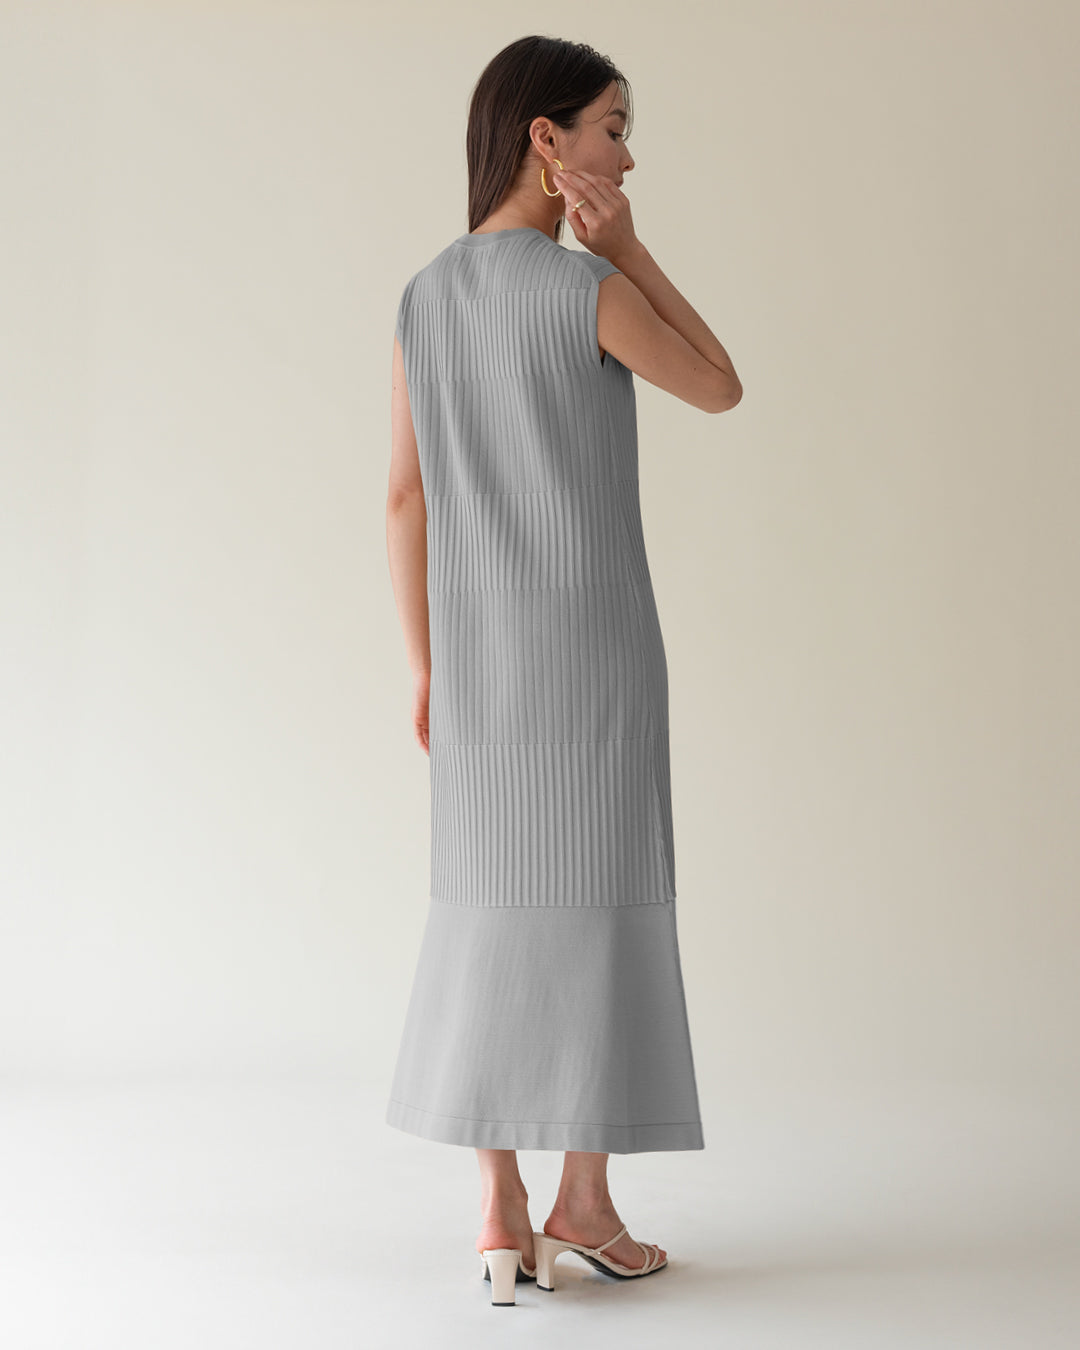 Multi-rib knit dress